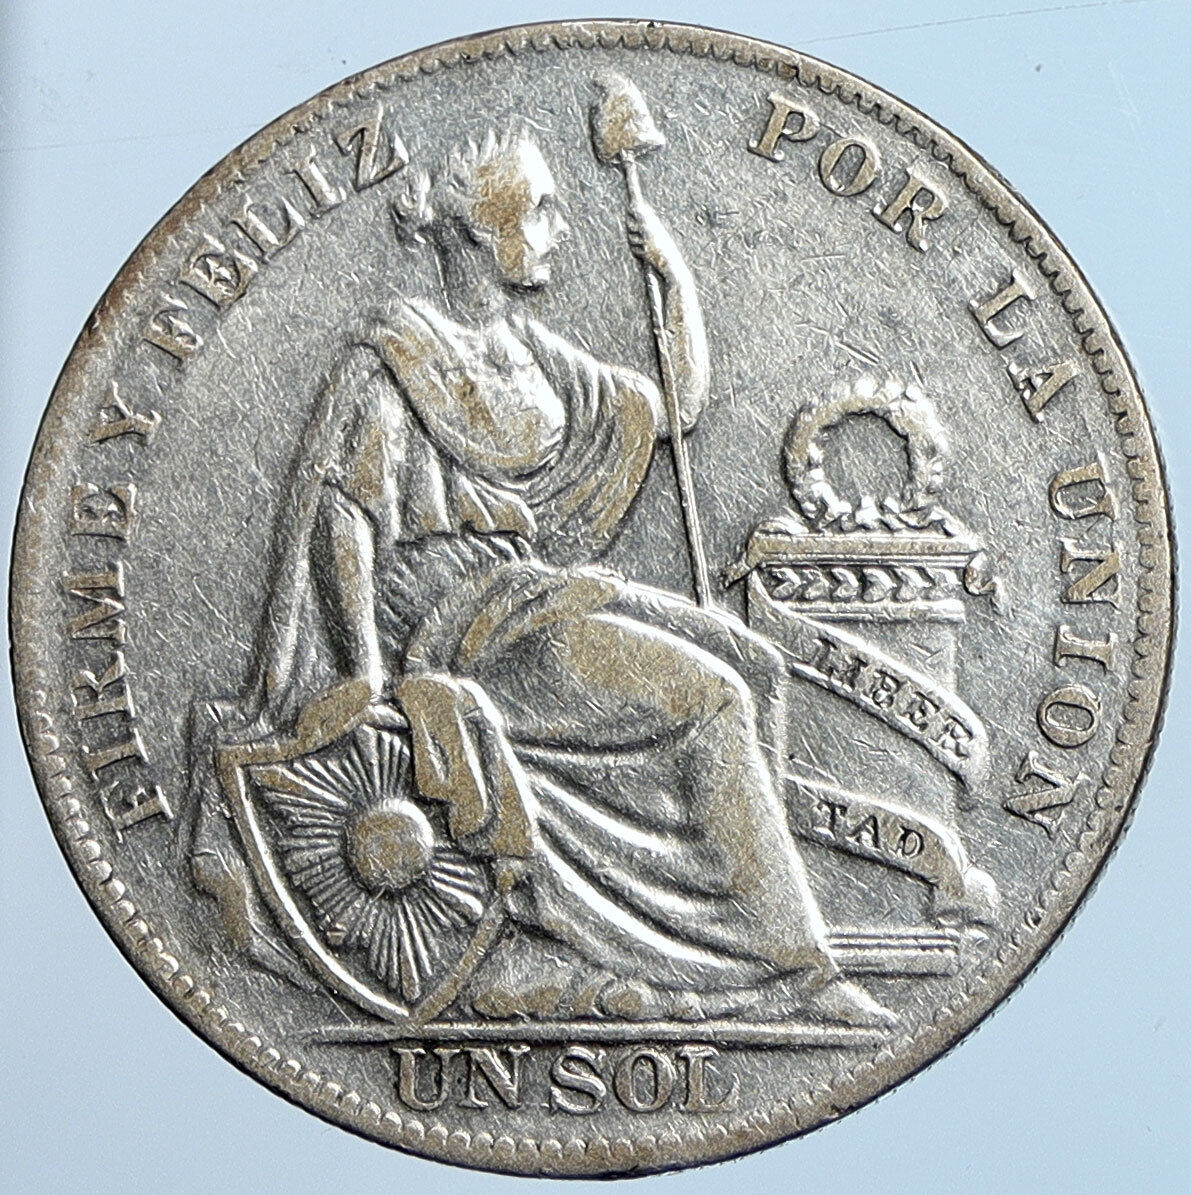 1934 PERU South America 1 SOL Antique BIG Original Silver Peruvian Coin i114543